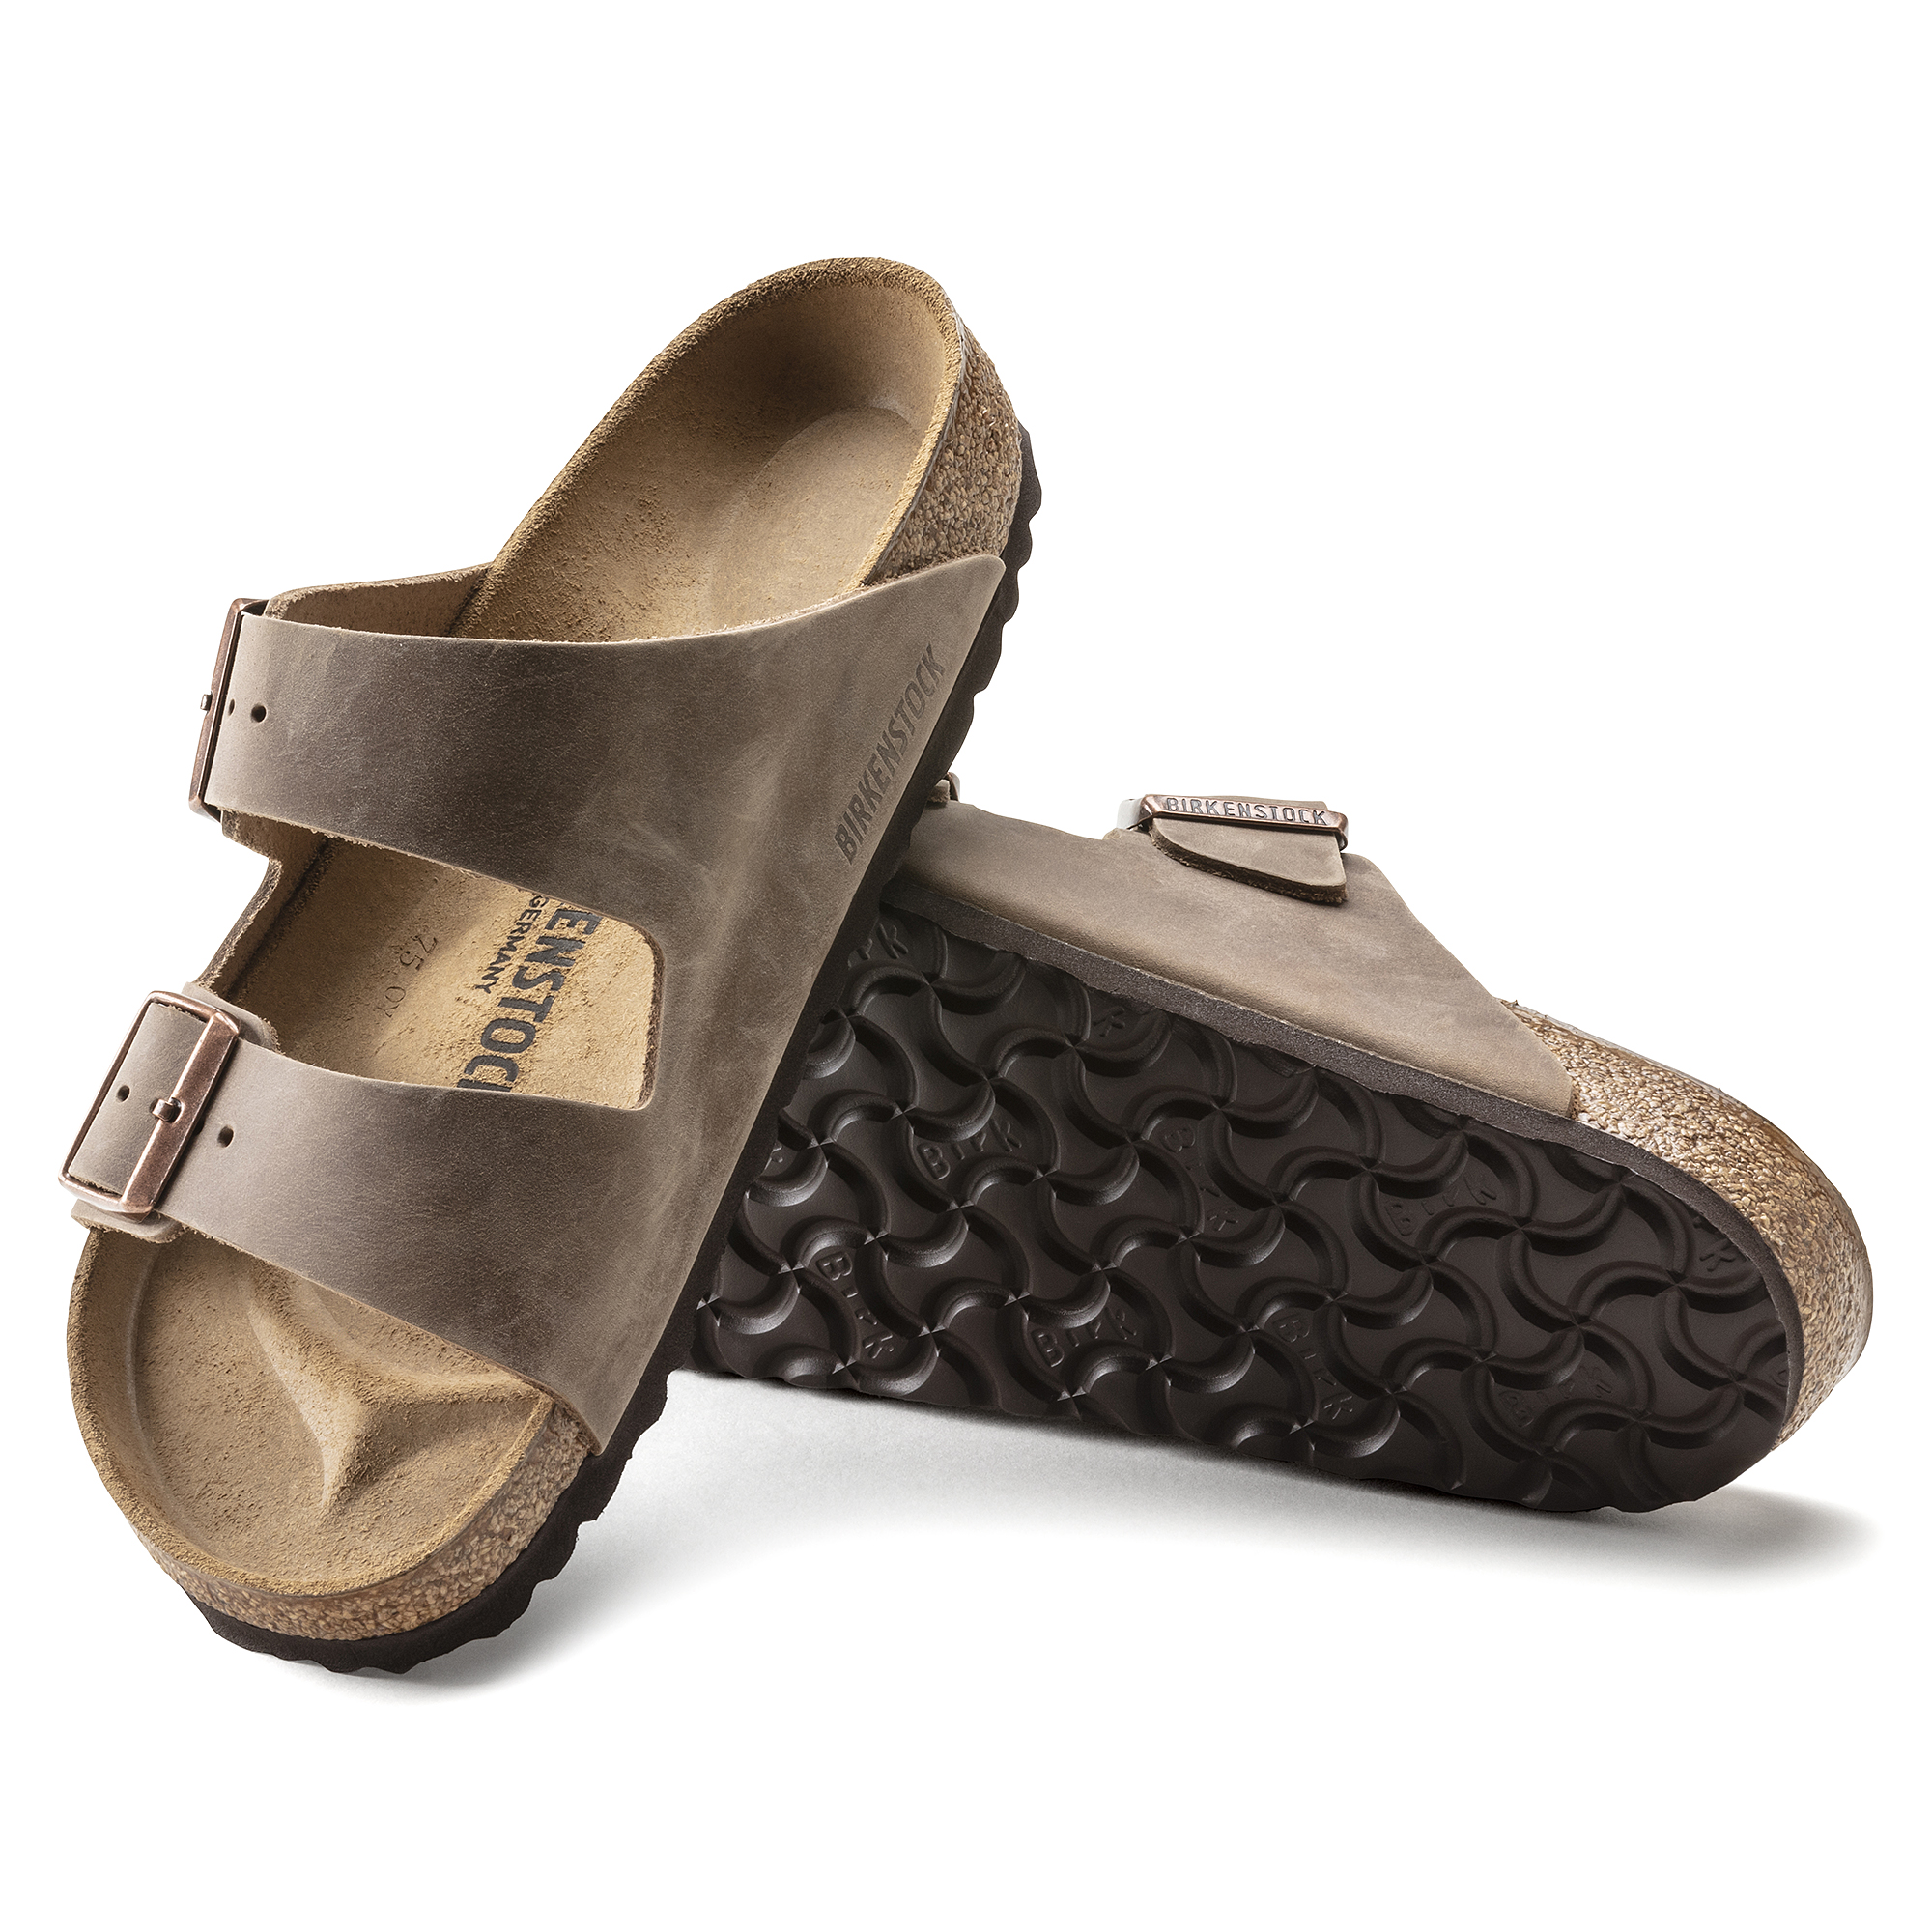 birkenstock women's arizona leather sandal